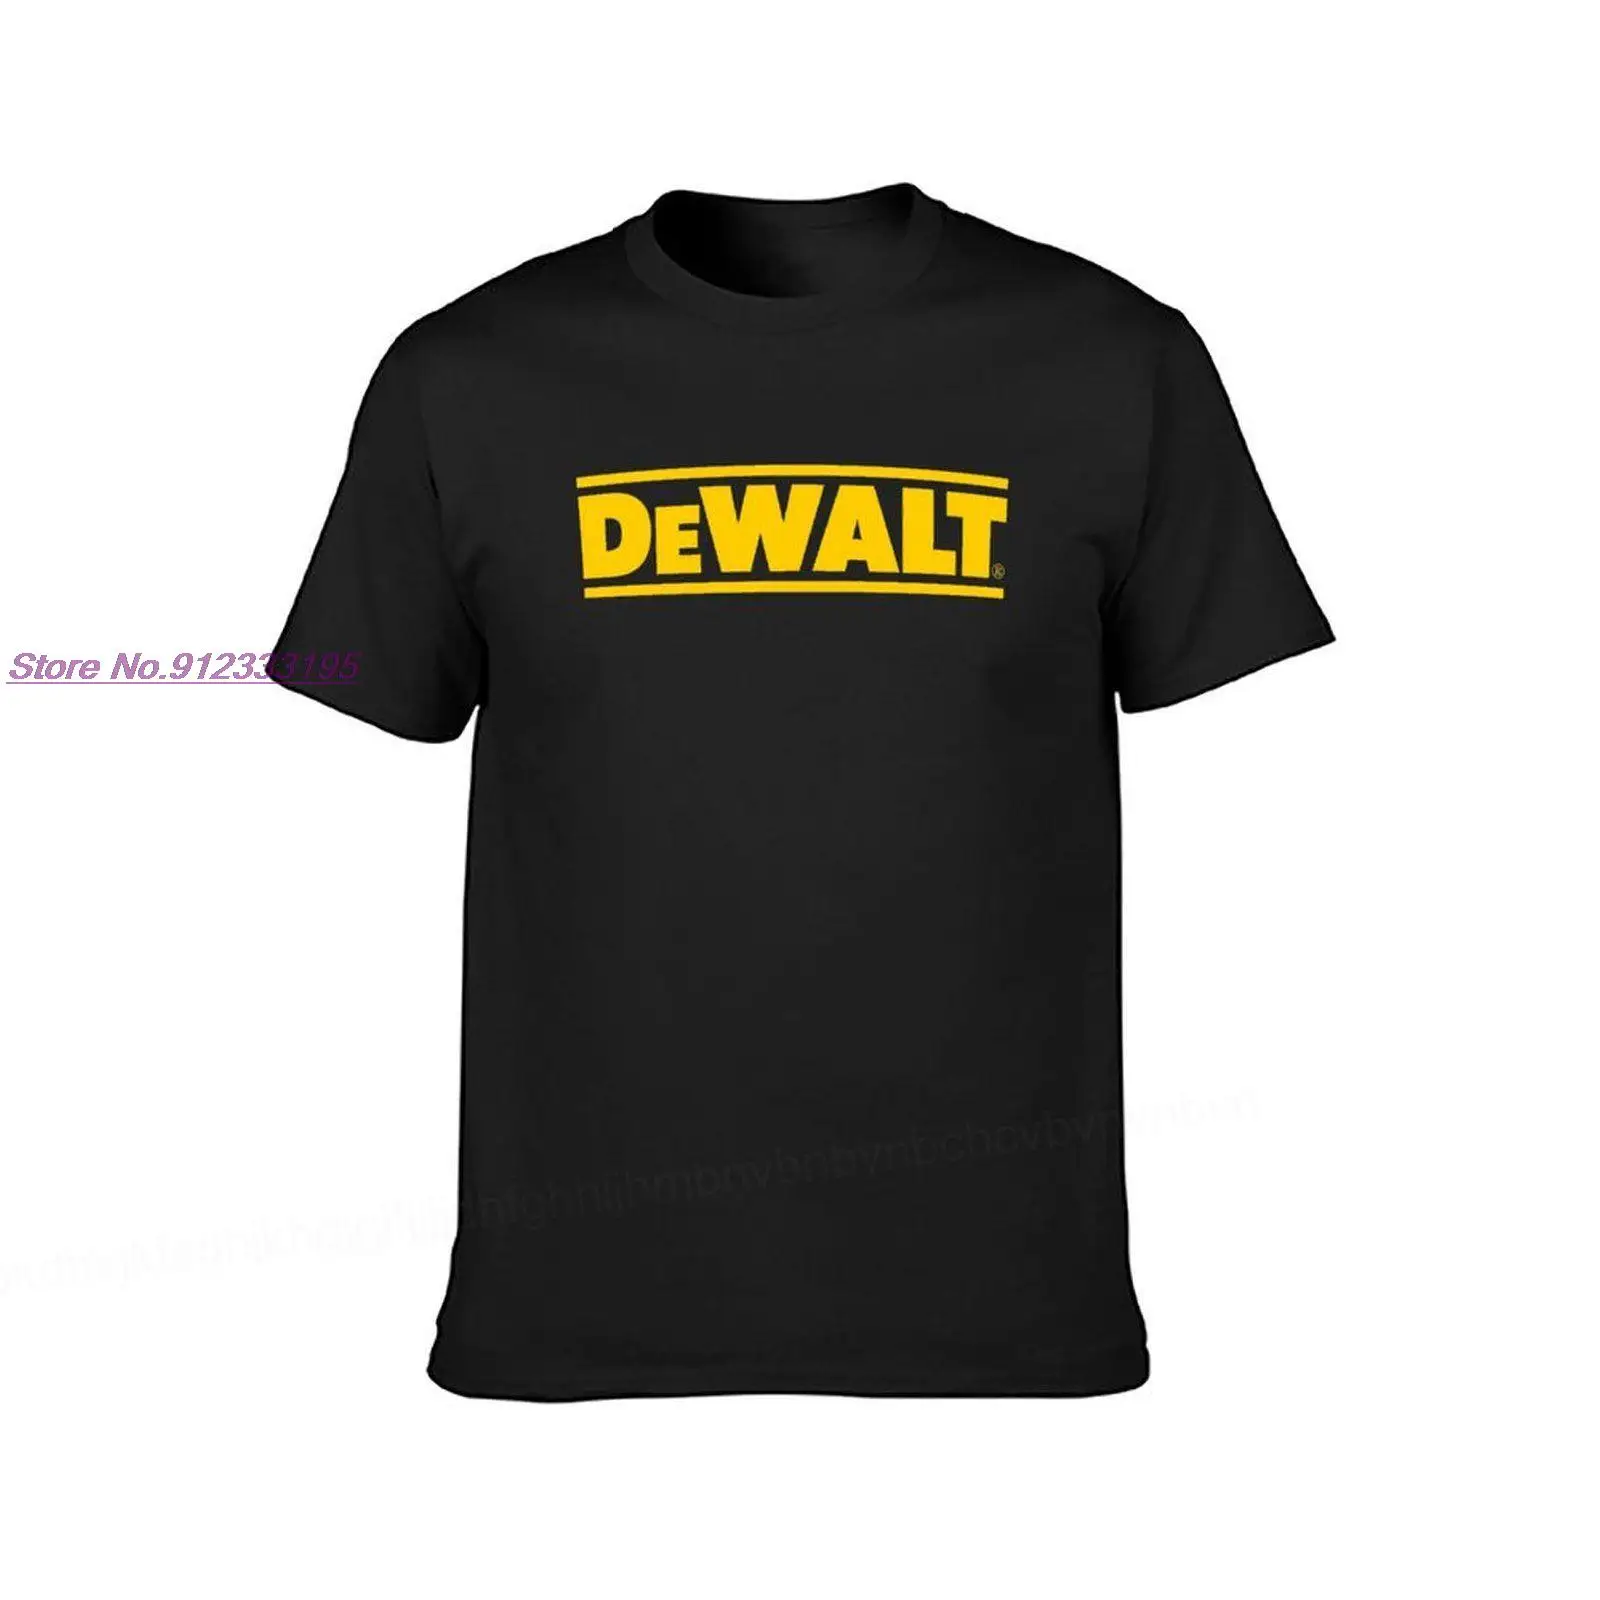 Художественные мужские футболки с логотипом Dewalt, летняя толстовка, повседневные топы с коротким рукавом, хлопковые футболки, одежда с принт...